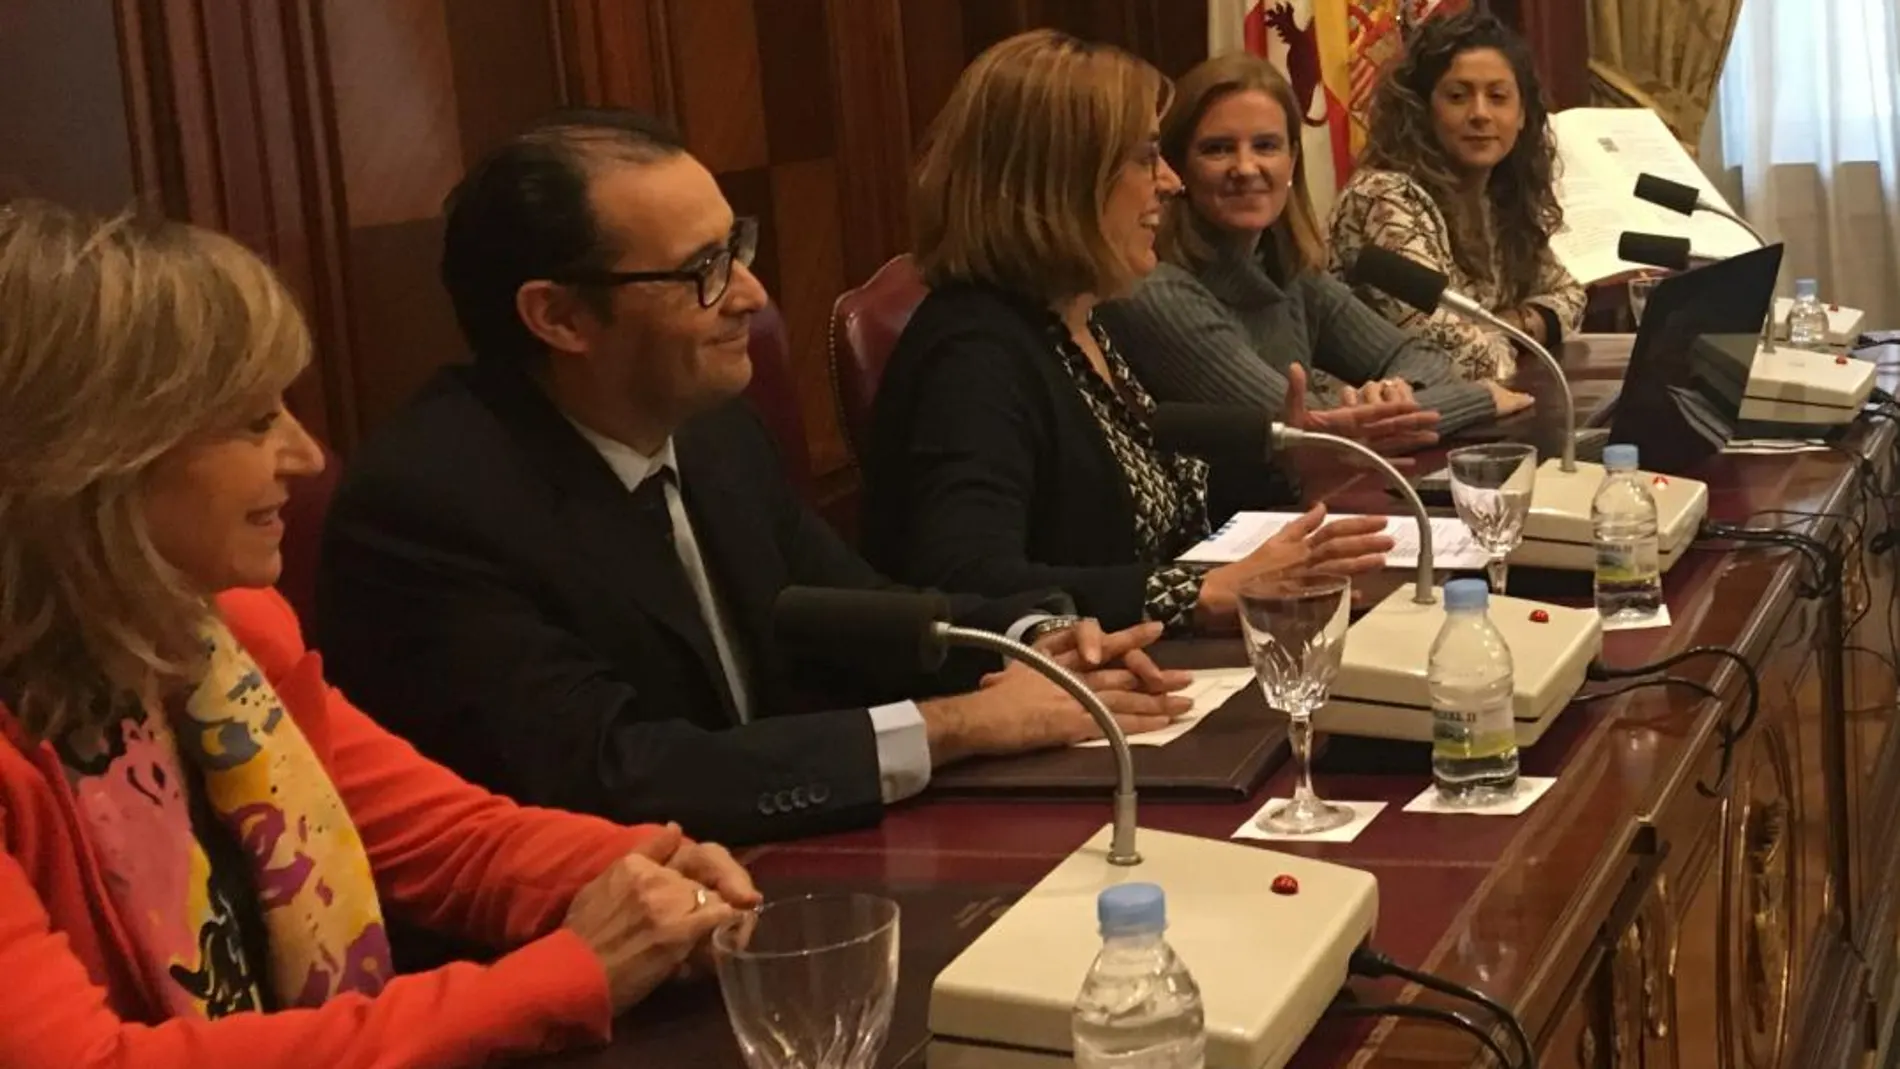 La presidenta de la Diputación de Palencia presenta el programa «Desafío Mujer Rural», que impulsa el autoempleo en los pueblos